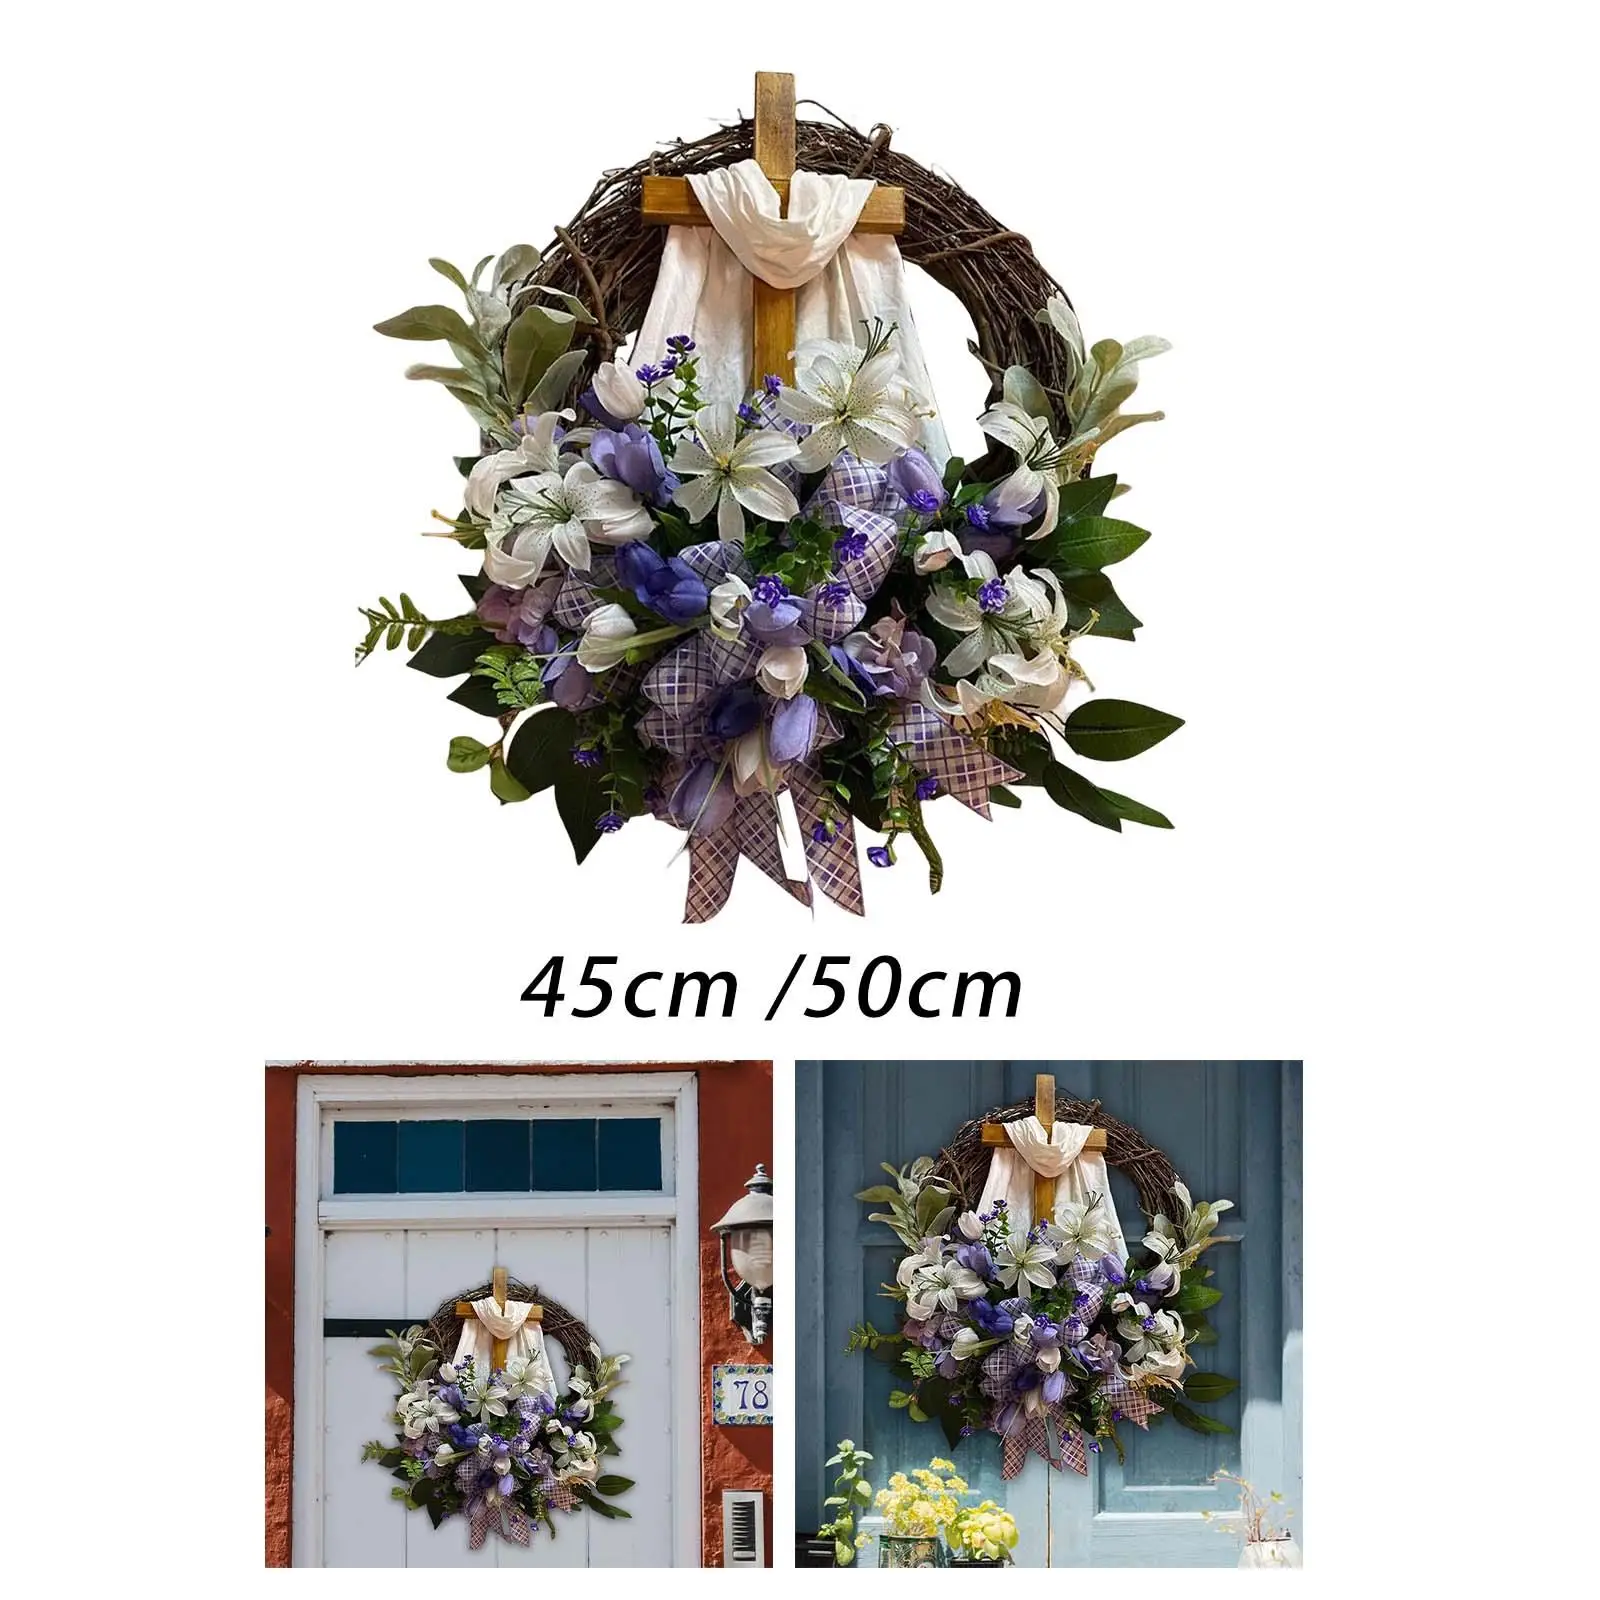 Easter Wreath with Cross Door Hanging Decorative Wreath for Weddings, Parties, Gardens, Hotels Exquisite Workmanship Rustic